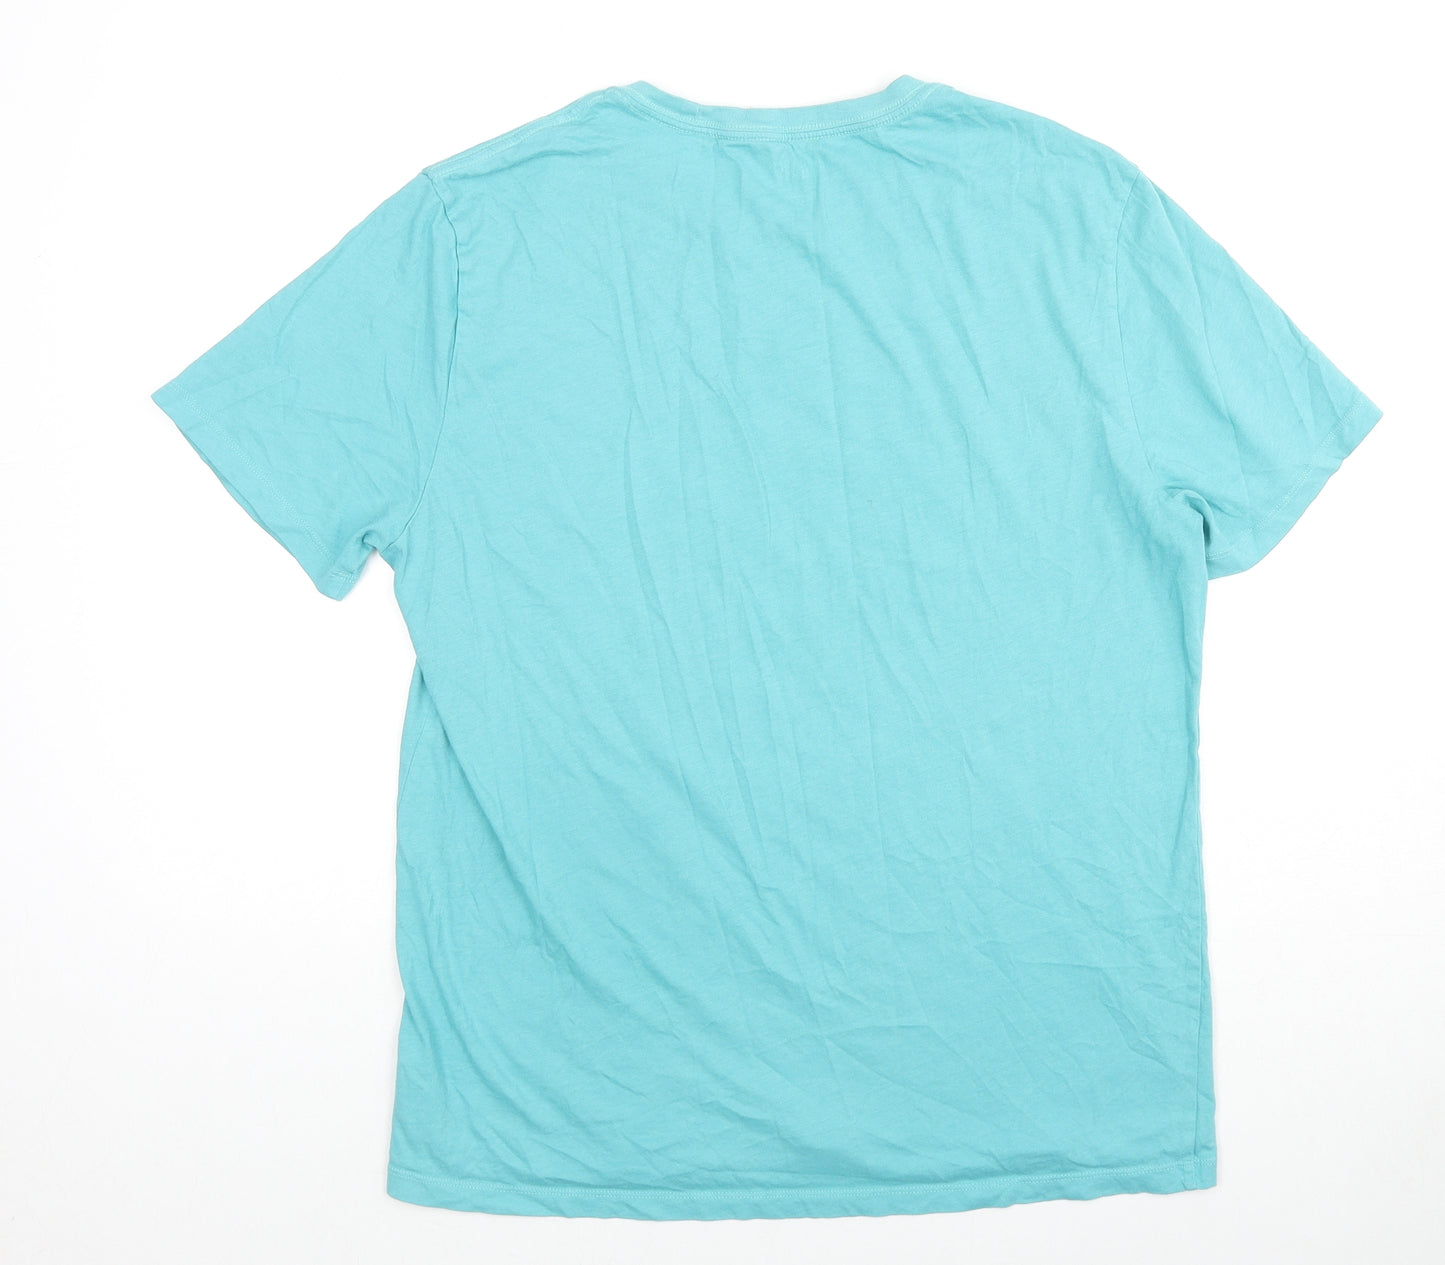 Gap Mens Blue Cotton T-Shirt Size L Crew Neck Pullover